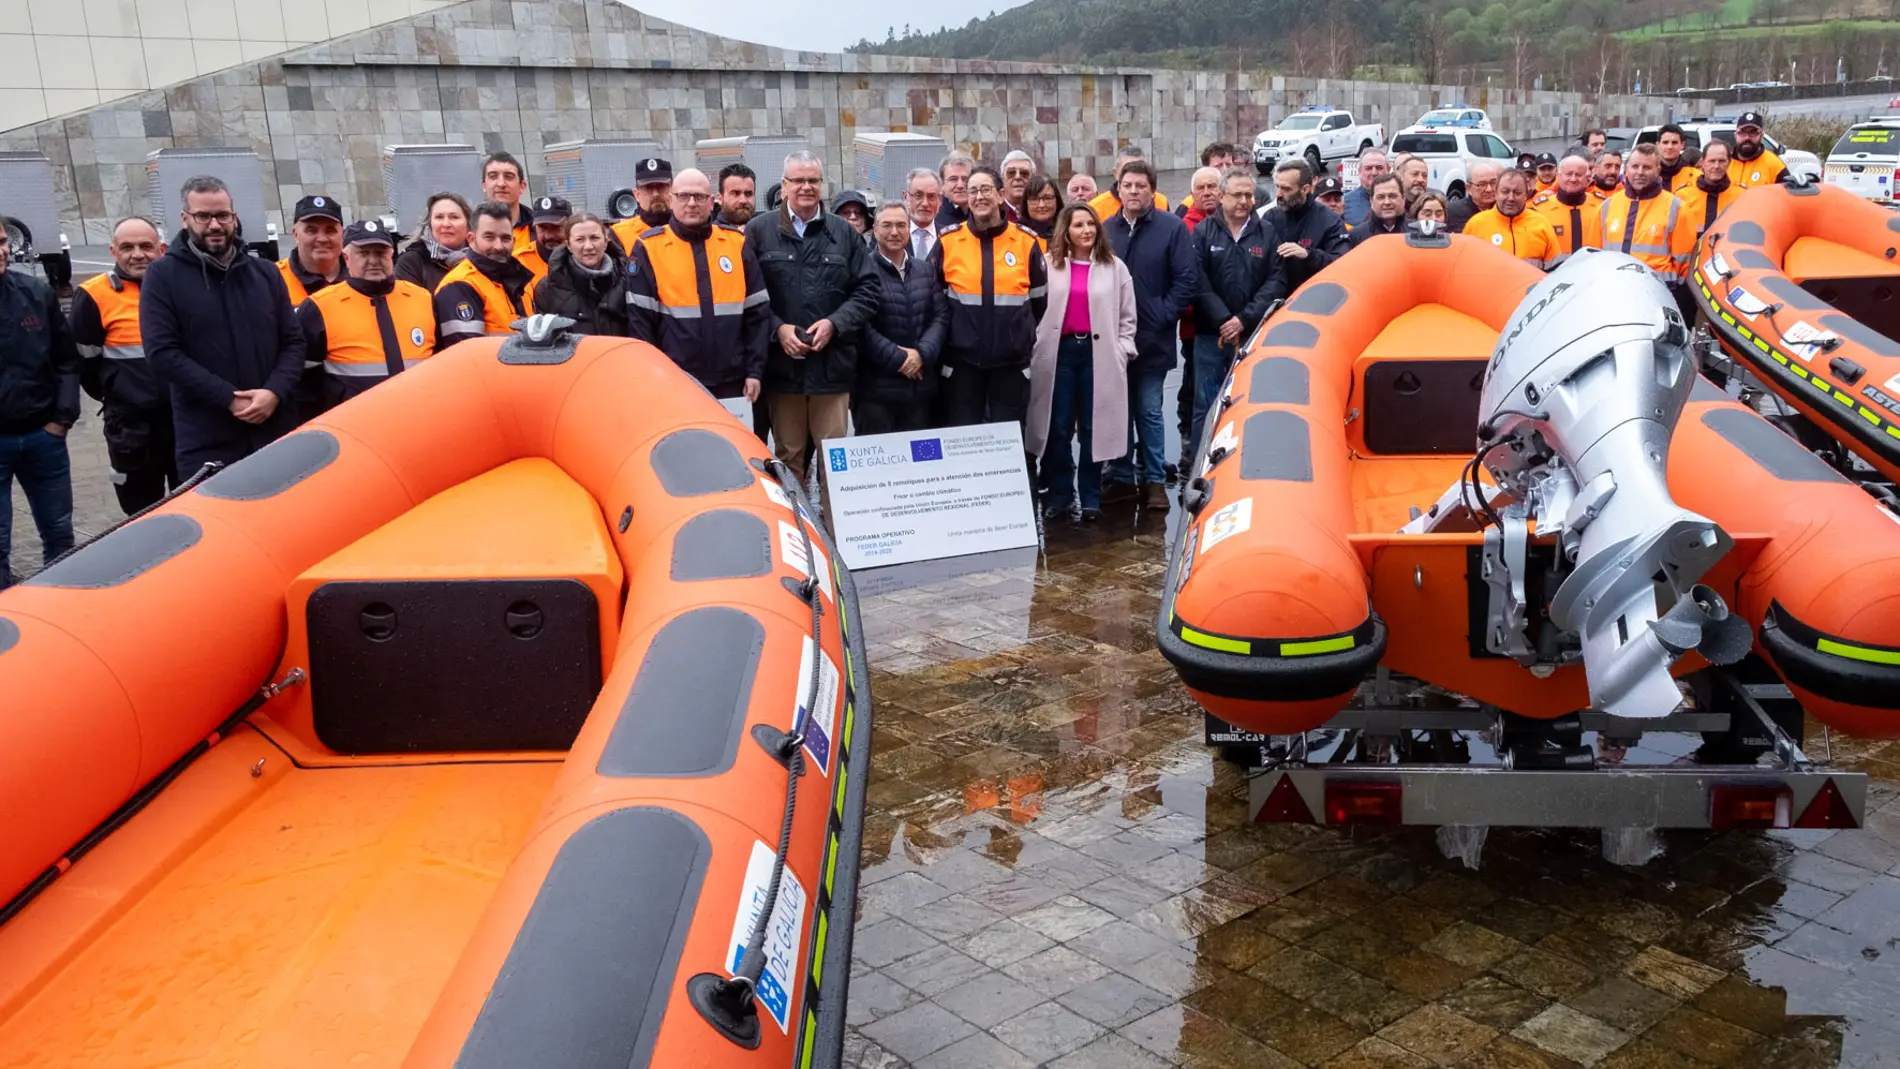 A Xunta dona 20 embarcacions para emerxencias